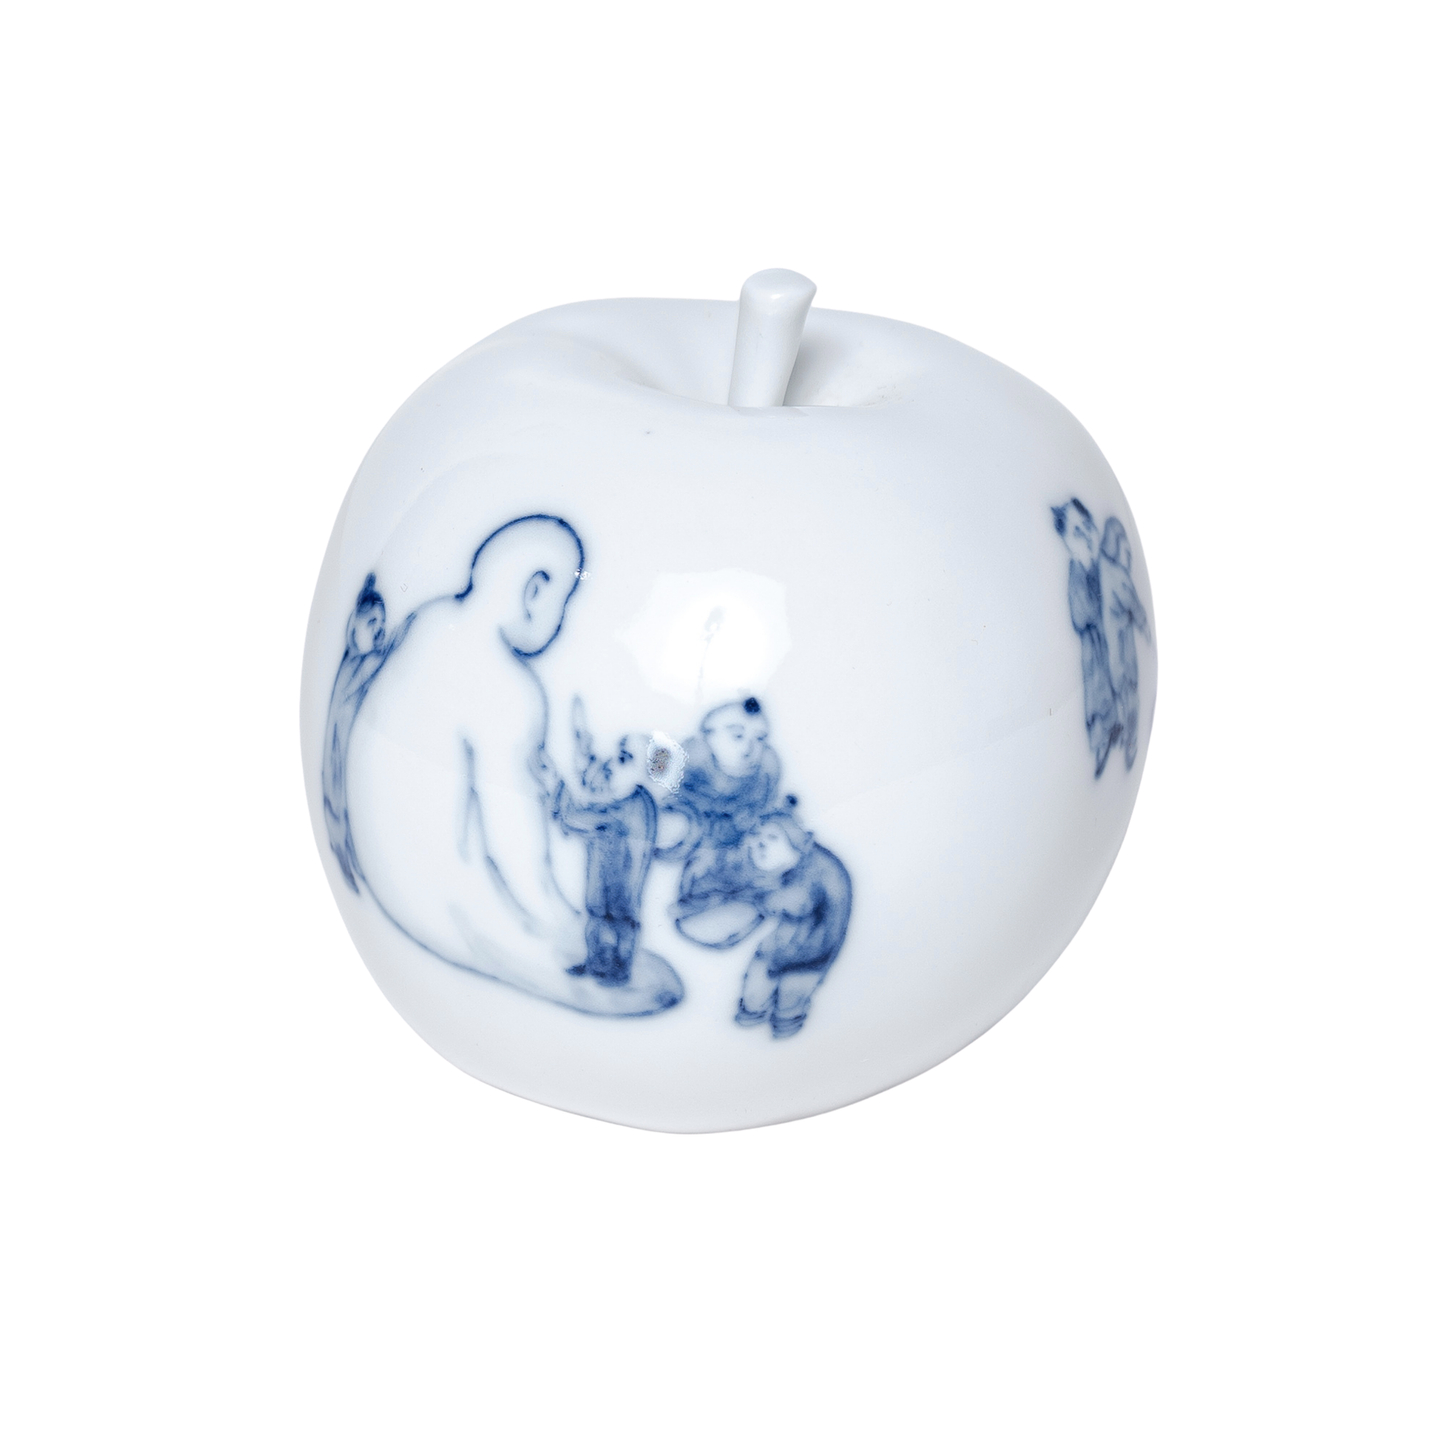 Taikkun Porcelain Apple  - Wisdom & Learning (Last piece) - #002